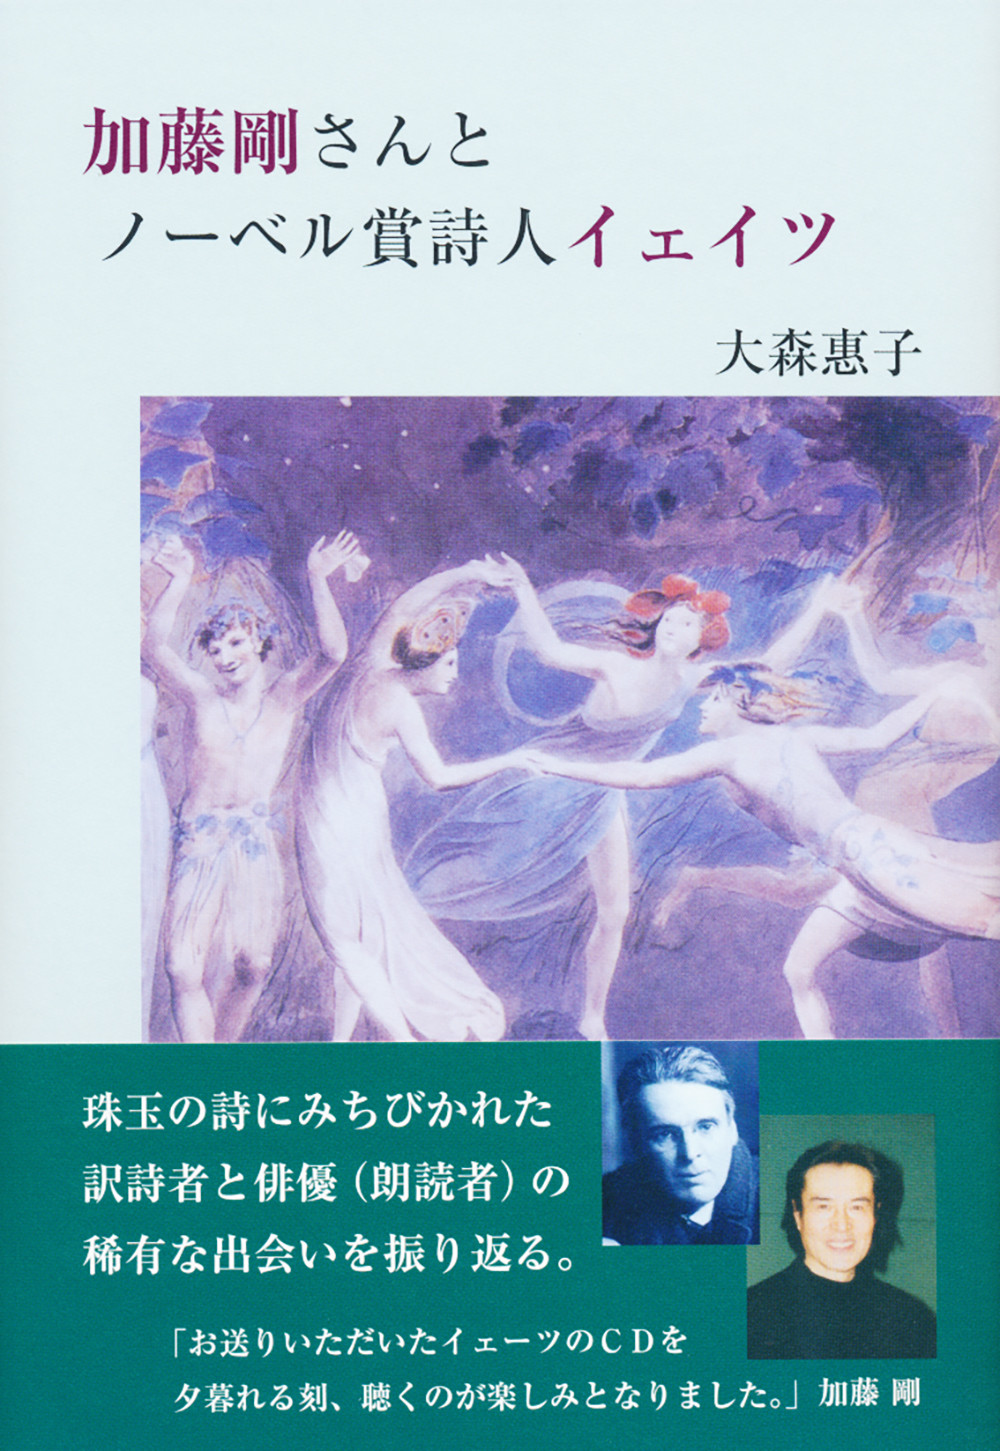 加藤剛さんとノーベル賞詩人イェイツの商品画像